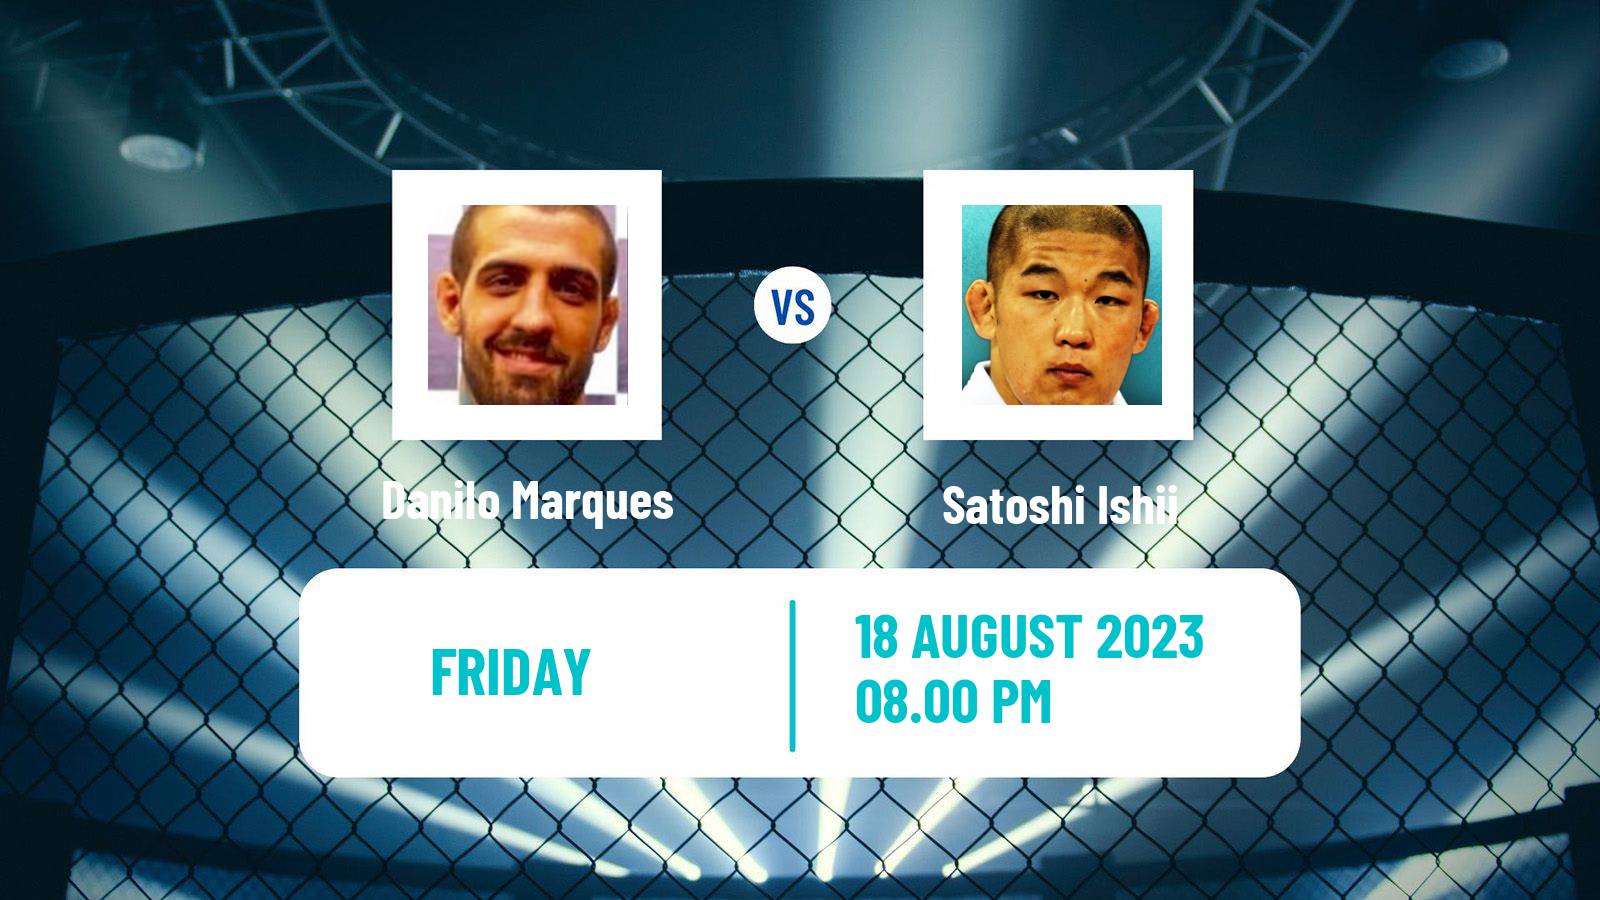 MMA Heavyweight Pfl Men Danilo Marques - Satoshi Ishii